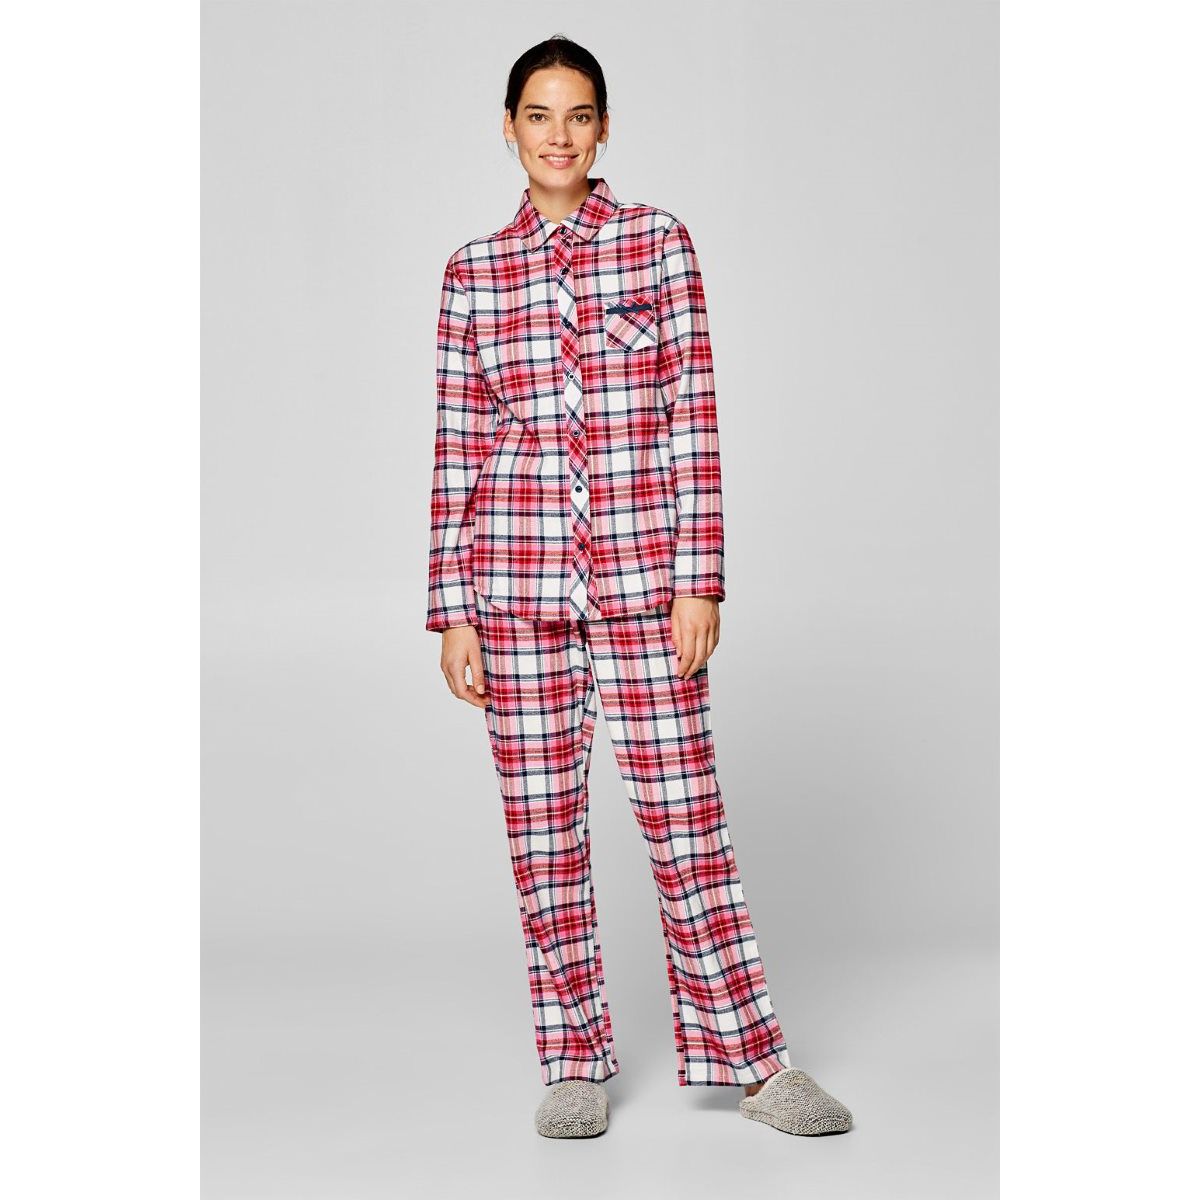 Bijpassende familie rode Buffalo geruite pyjama broek maten variëren krijgen voor kerstmis! Kleding Gender-neutrale kleding volwassenen Pyjamas & Badjassen Pyjama 